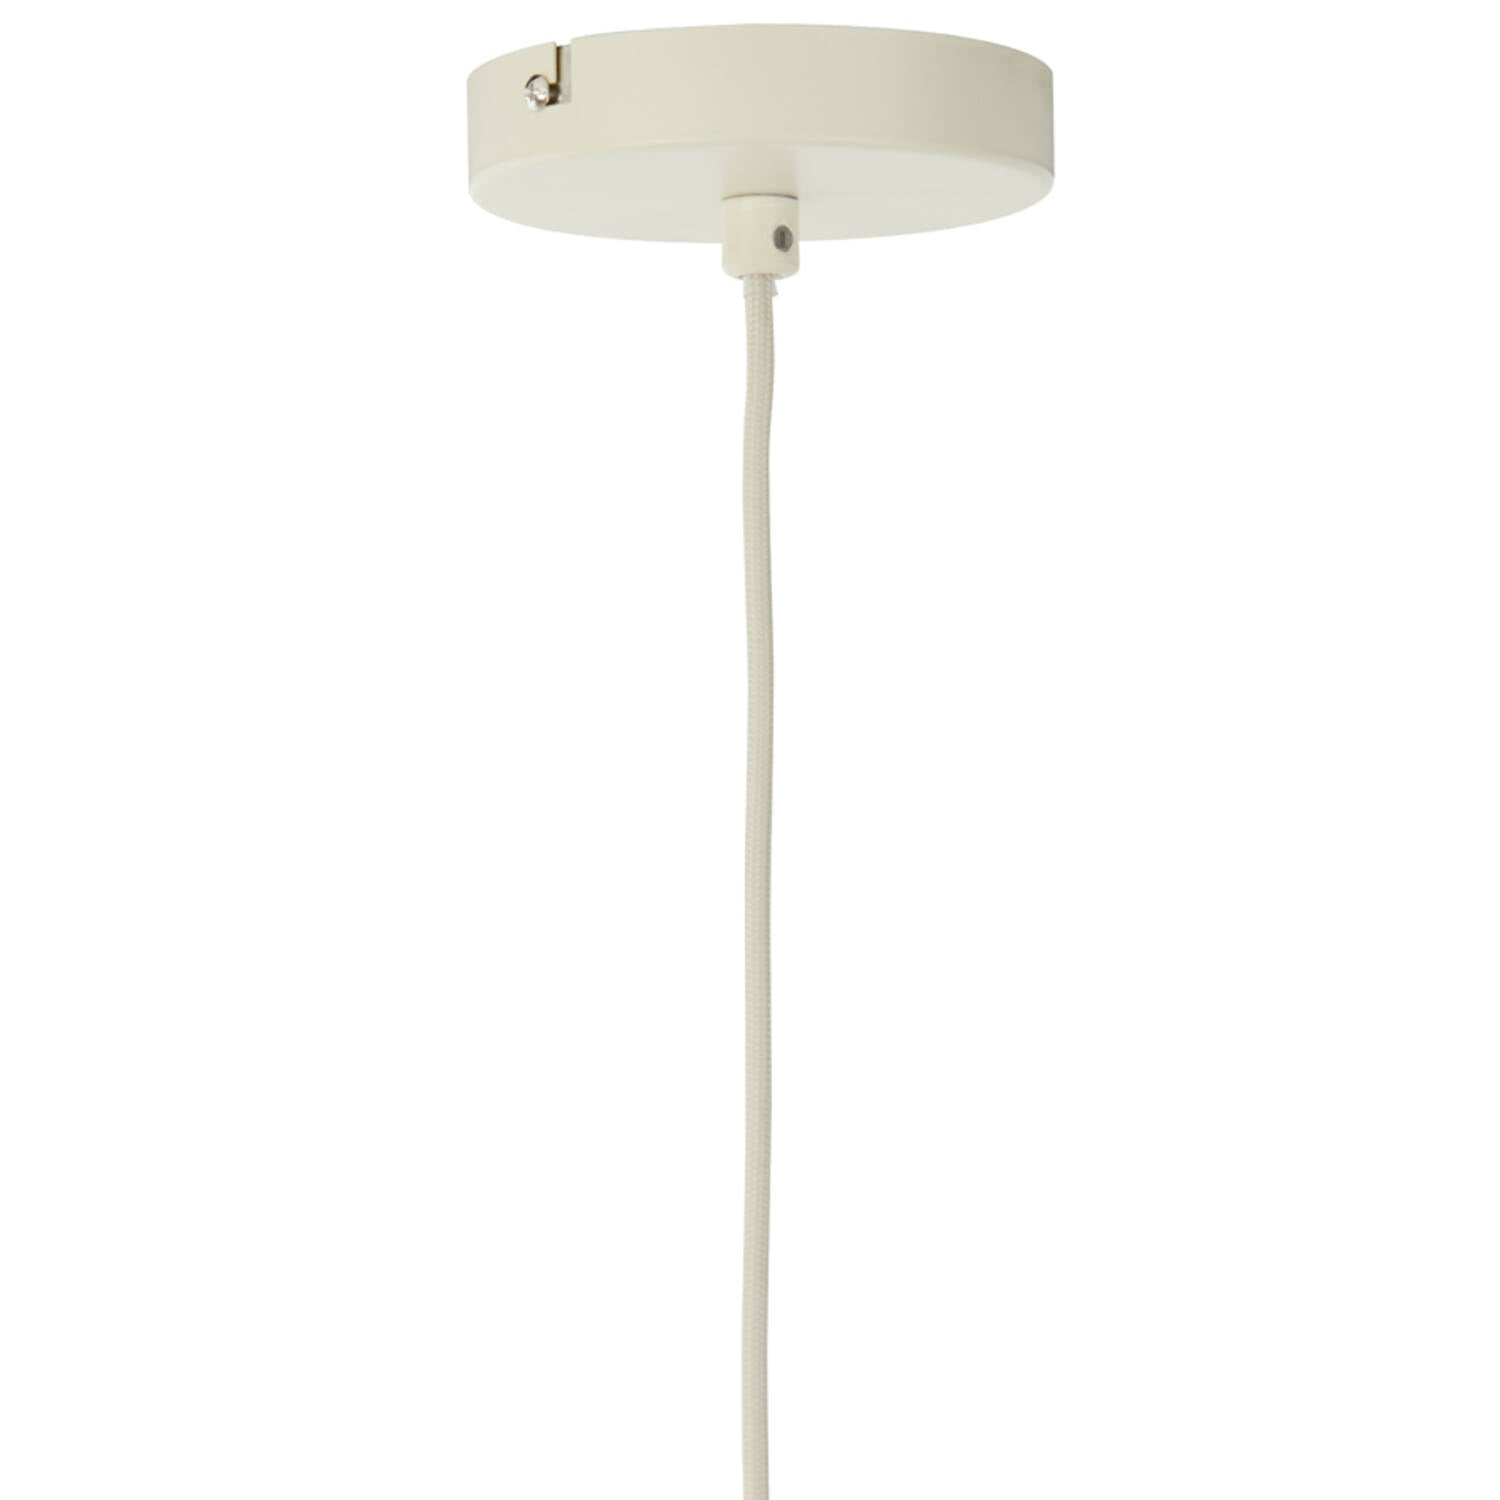 Plumeria Sabbia S lampadario - hanging lamp